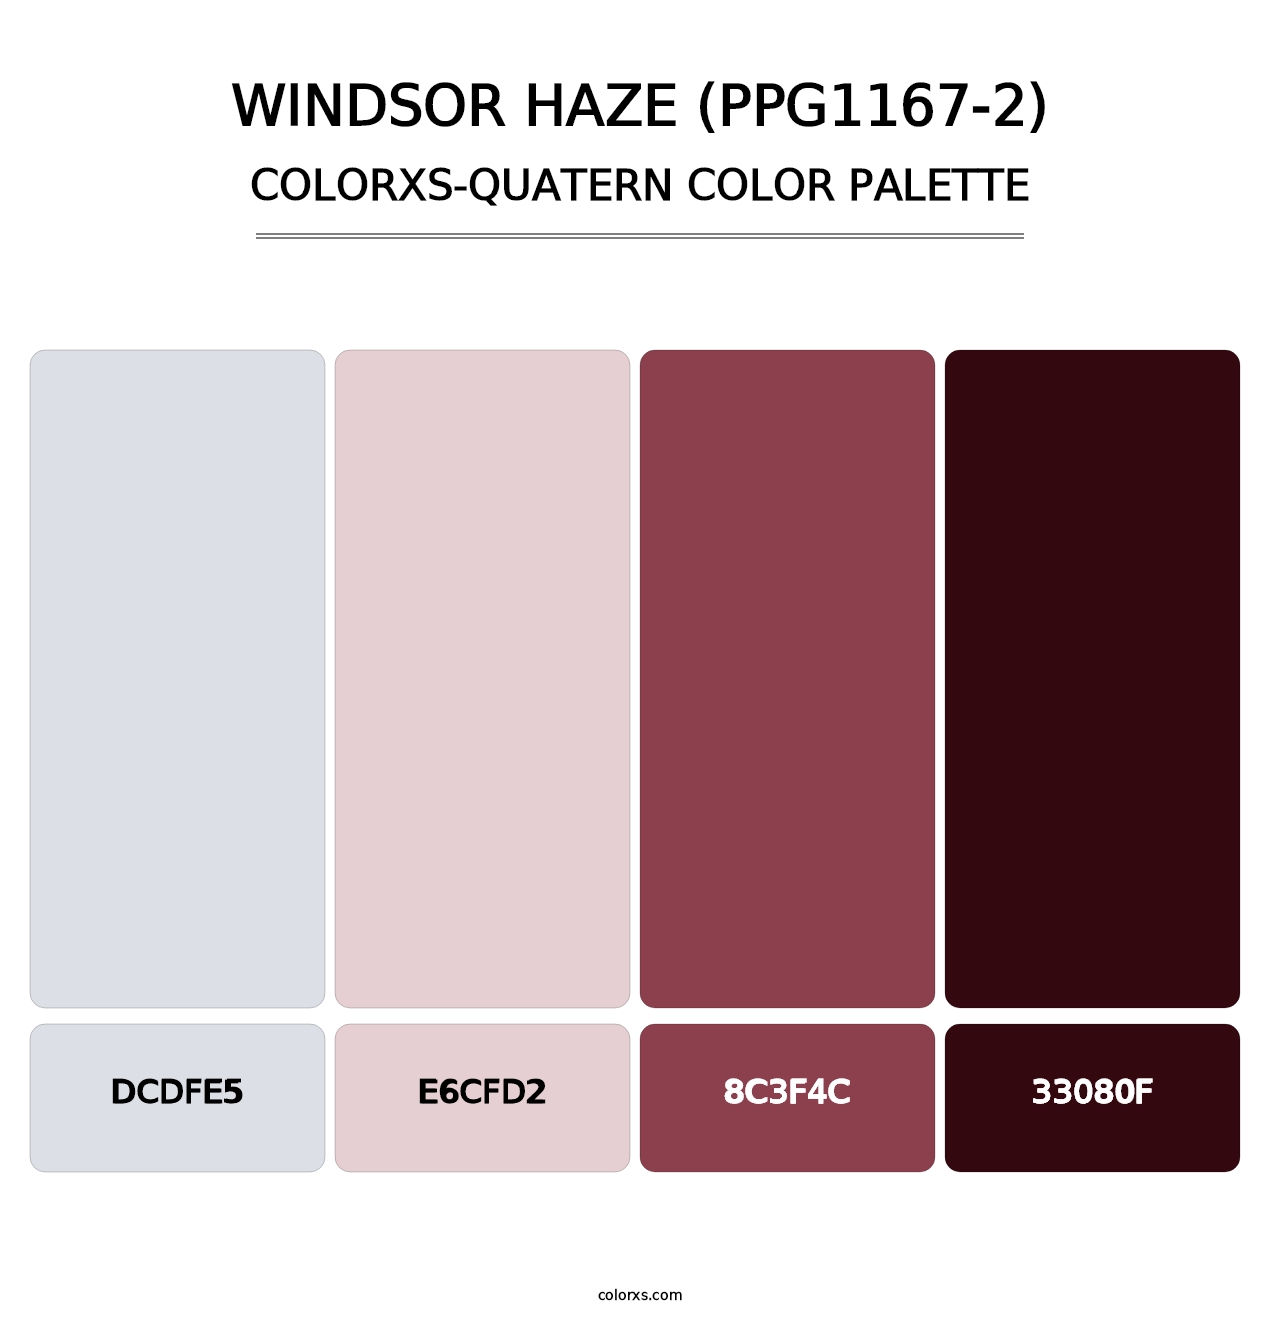 Windsor Haze (PPG1167-2) - Colorxs Quatern Palette